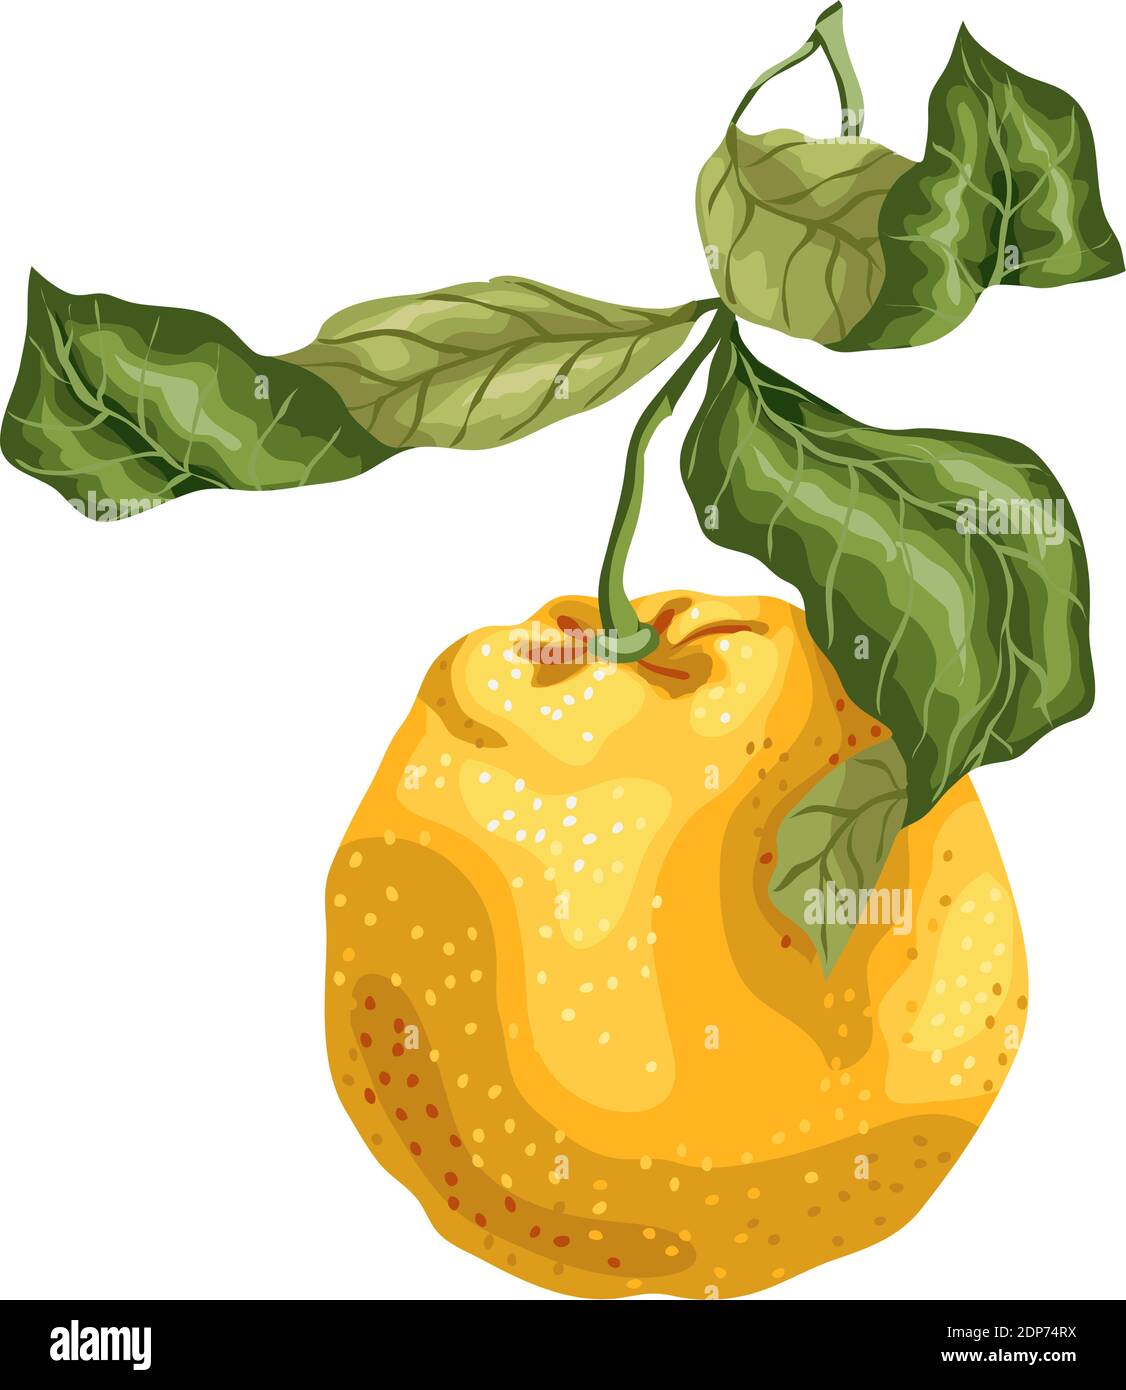 Fruit orange fabriqué dans un motif graphique sur la branche avec des feuilles. L'image est réalisée avec un réalisme graphique Illustration de Vecteur